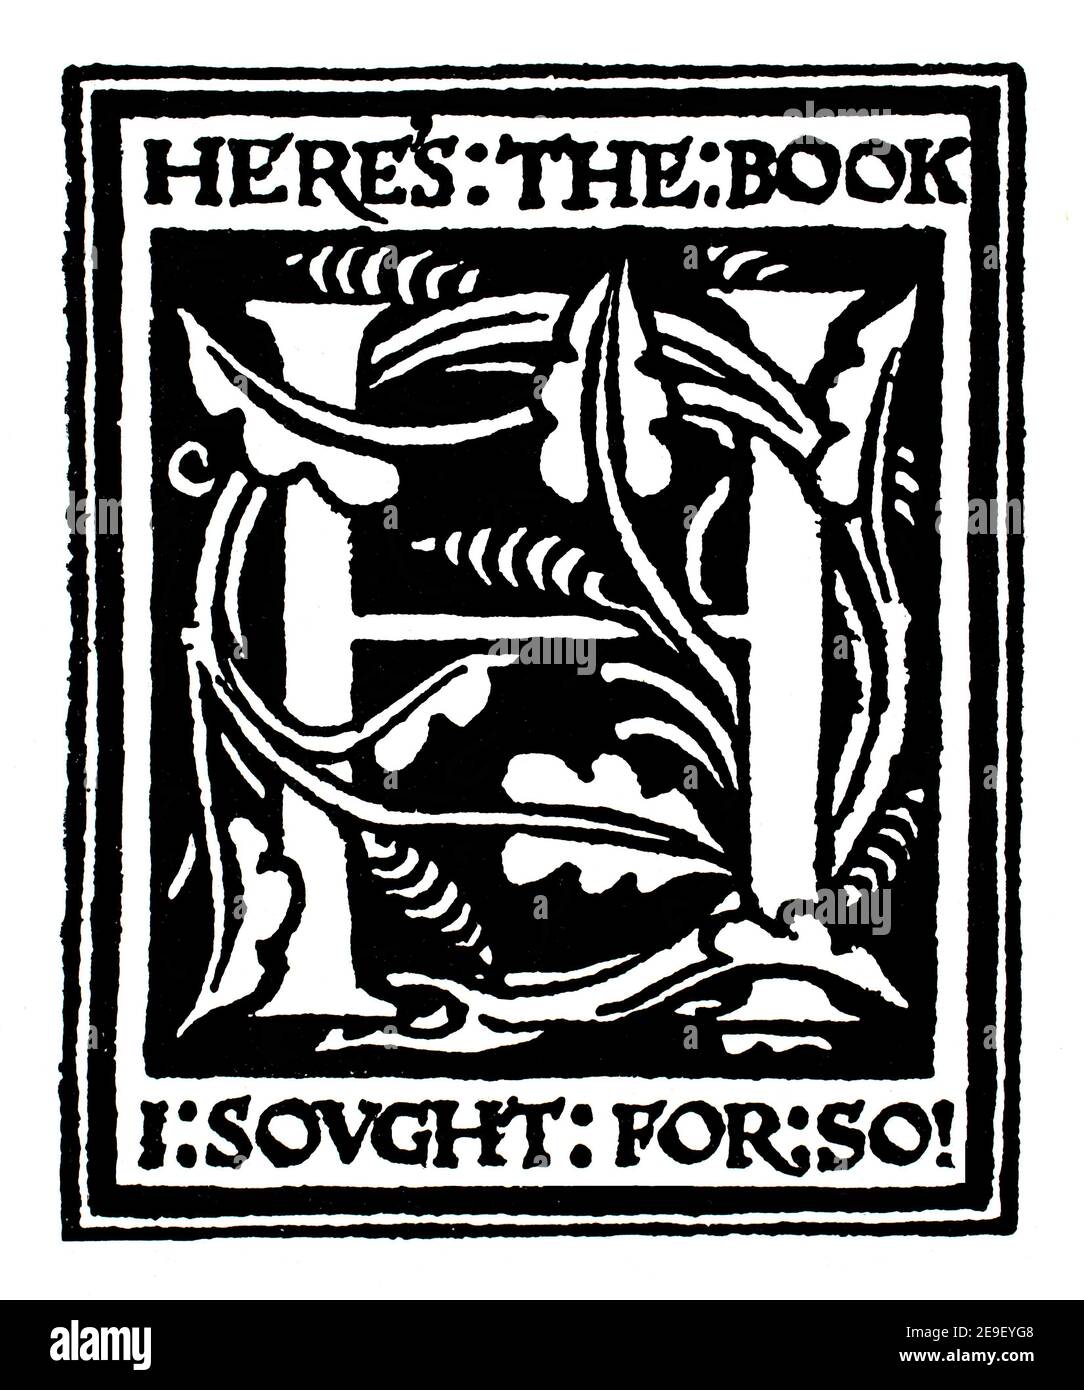 Hier ist das Buch, das ich suchte so, Exlibris-Linienillustration von Herbert P Horne, in 1893 Band 1 des Studios an Illustrated Magazine of Fine and A Stockfoto